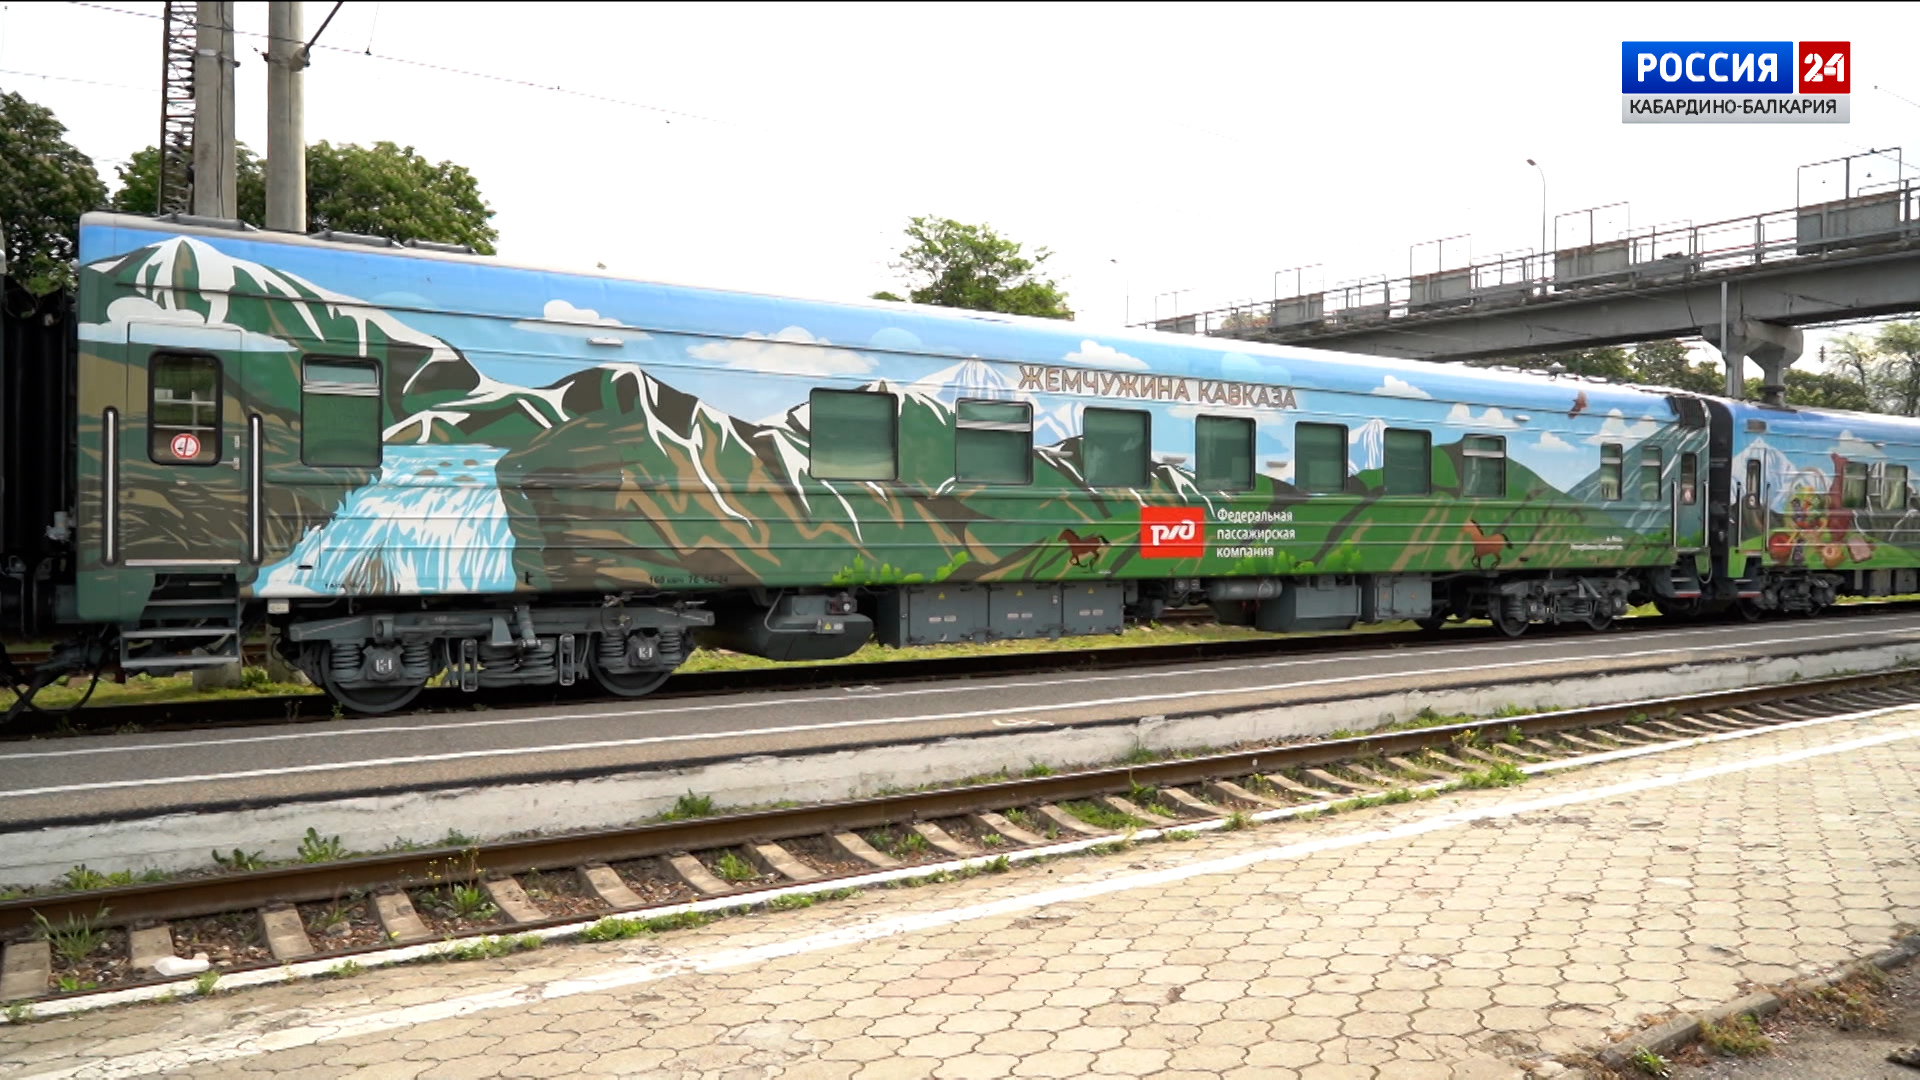 В КБР прибыл круизный поезд «Жемчужина Кавказа»